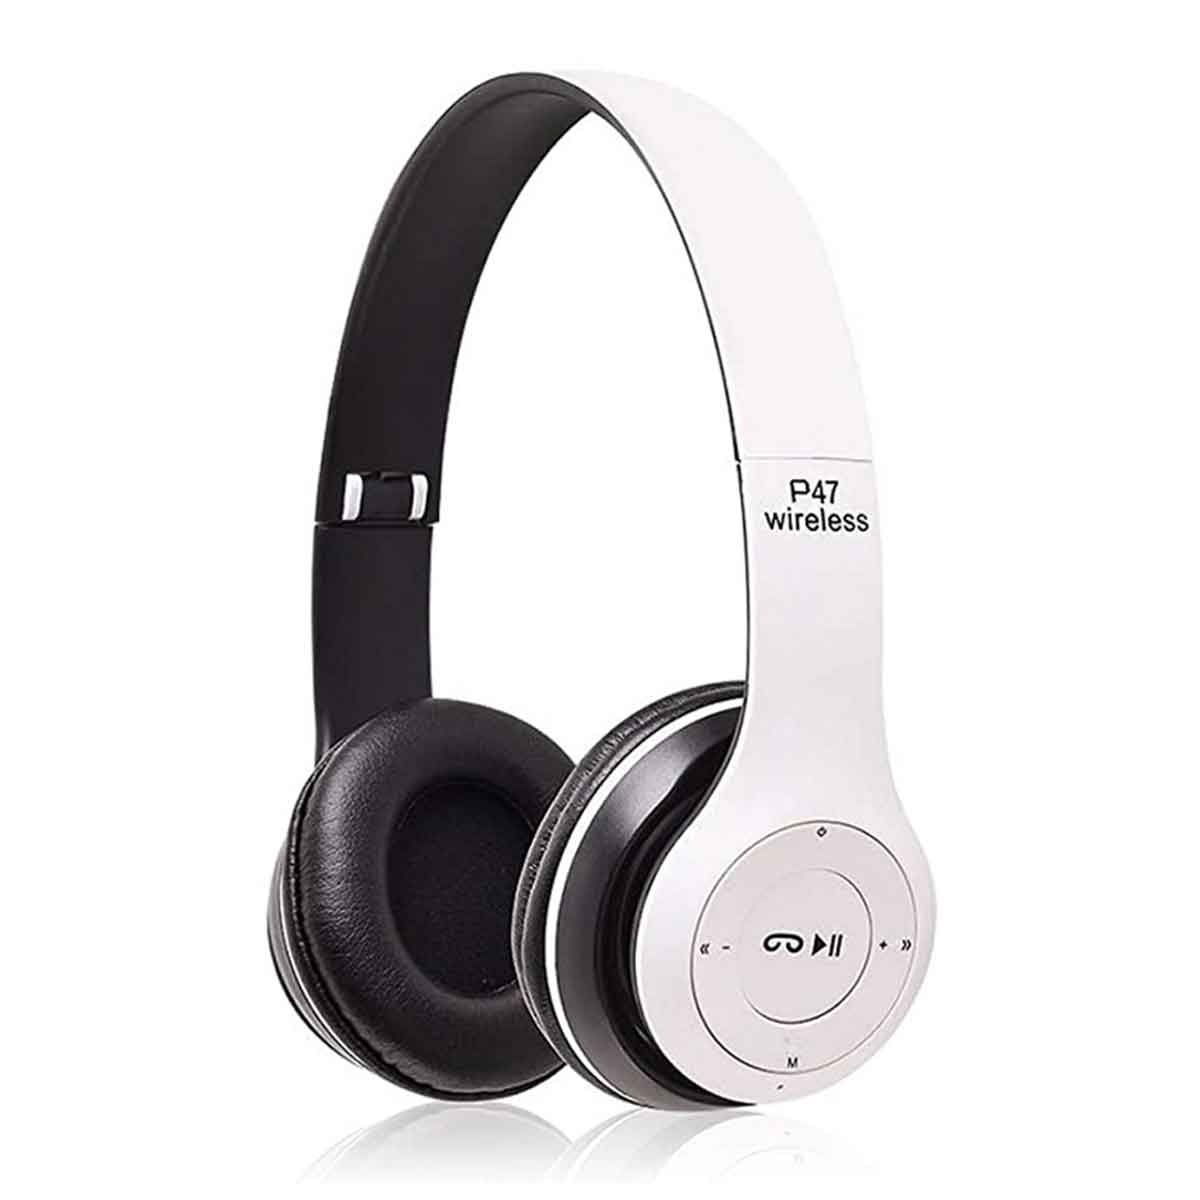 Ασύρματα/Ενσύρματα Παιδικά Ακουστικά Bluetoth – FM – AUX – MicroSD On Ear P47-WB Λευκά – Μαύρα